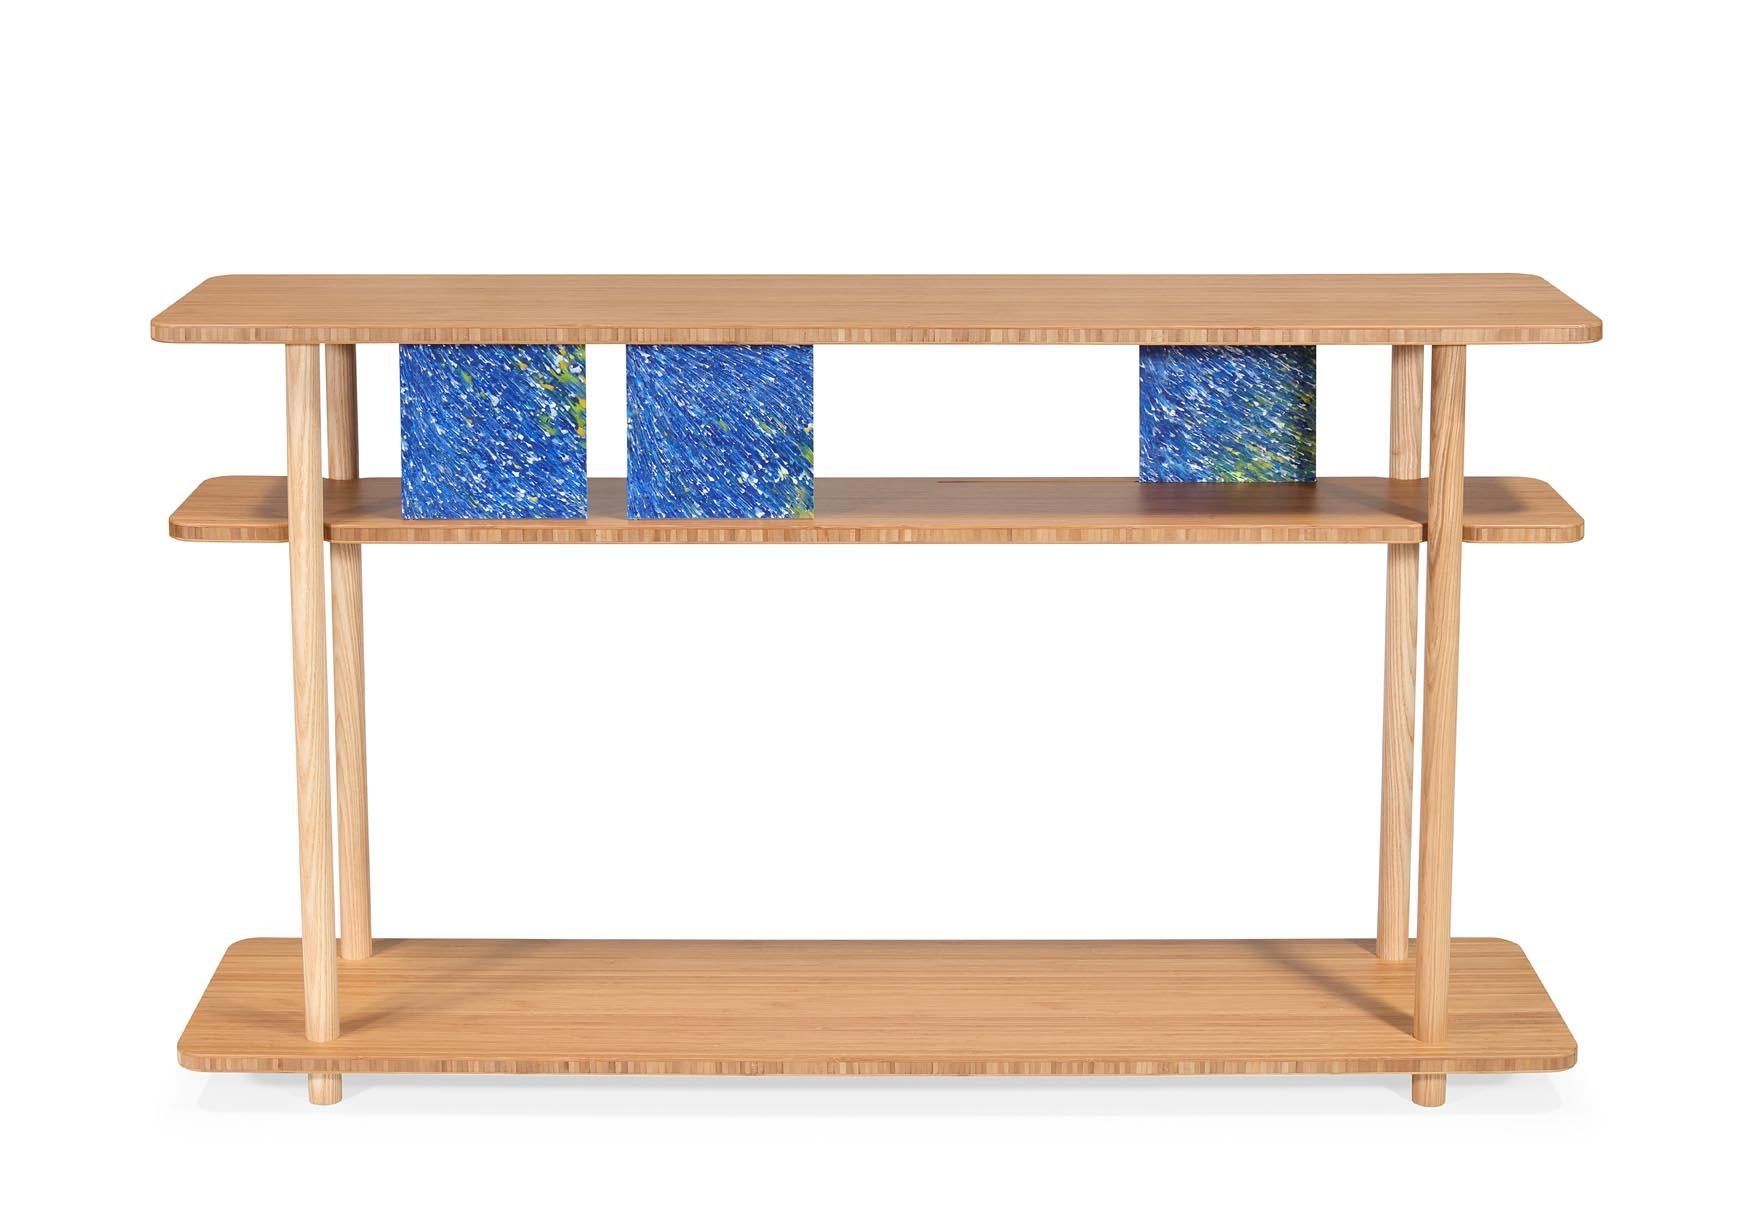 De l'utilisation interactive d'assiettes en plastique recyclé aux planches exquises en bambou, notre nouvelle console The Palite est une véritable incarnation du design respectueux de l'environnement.

La console Palito est plus qu'un simple meuble.